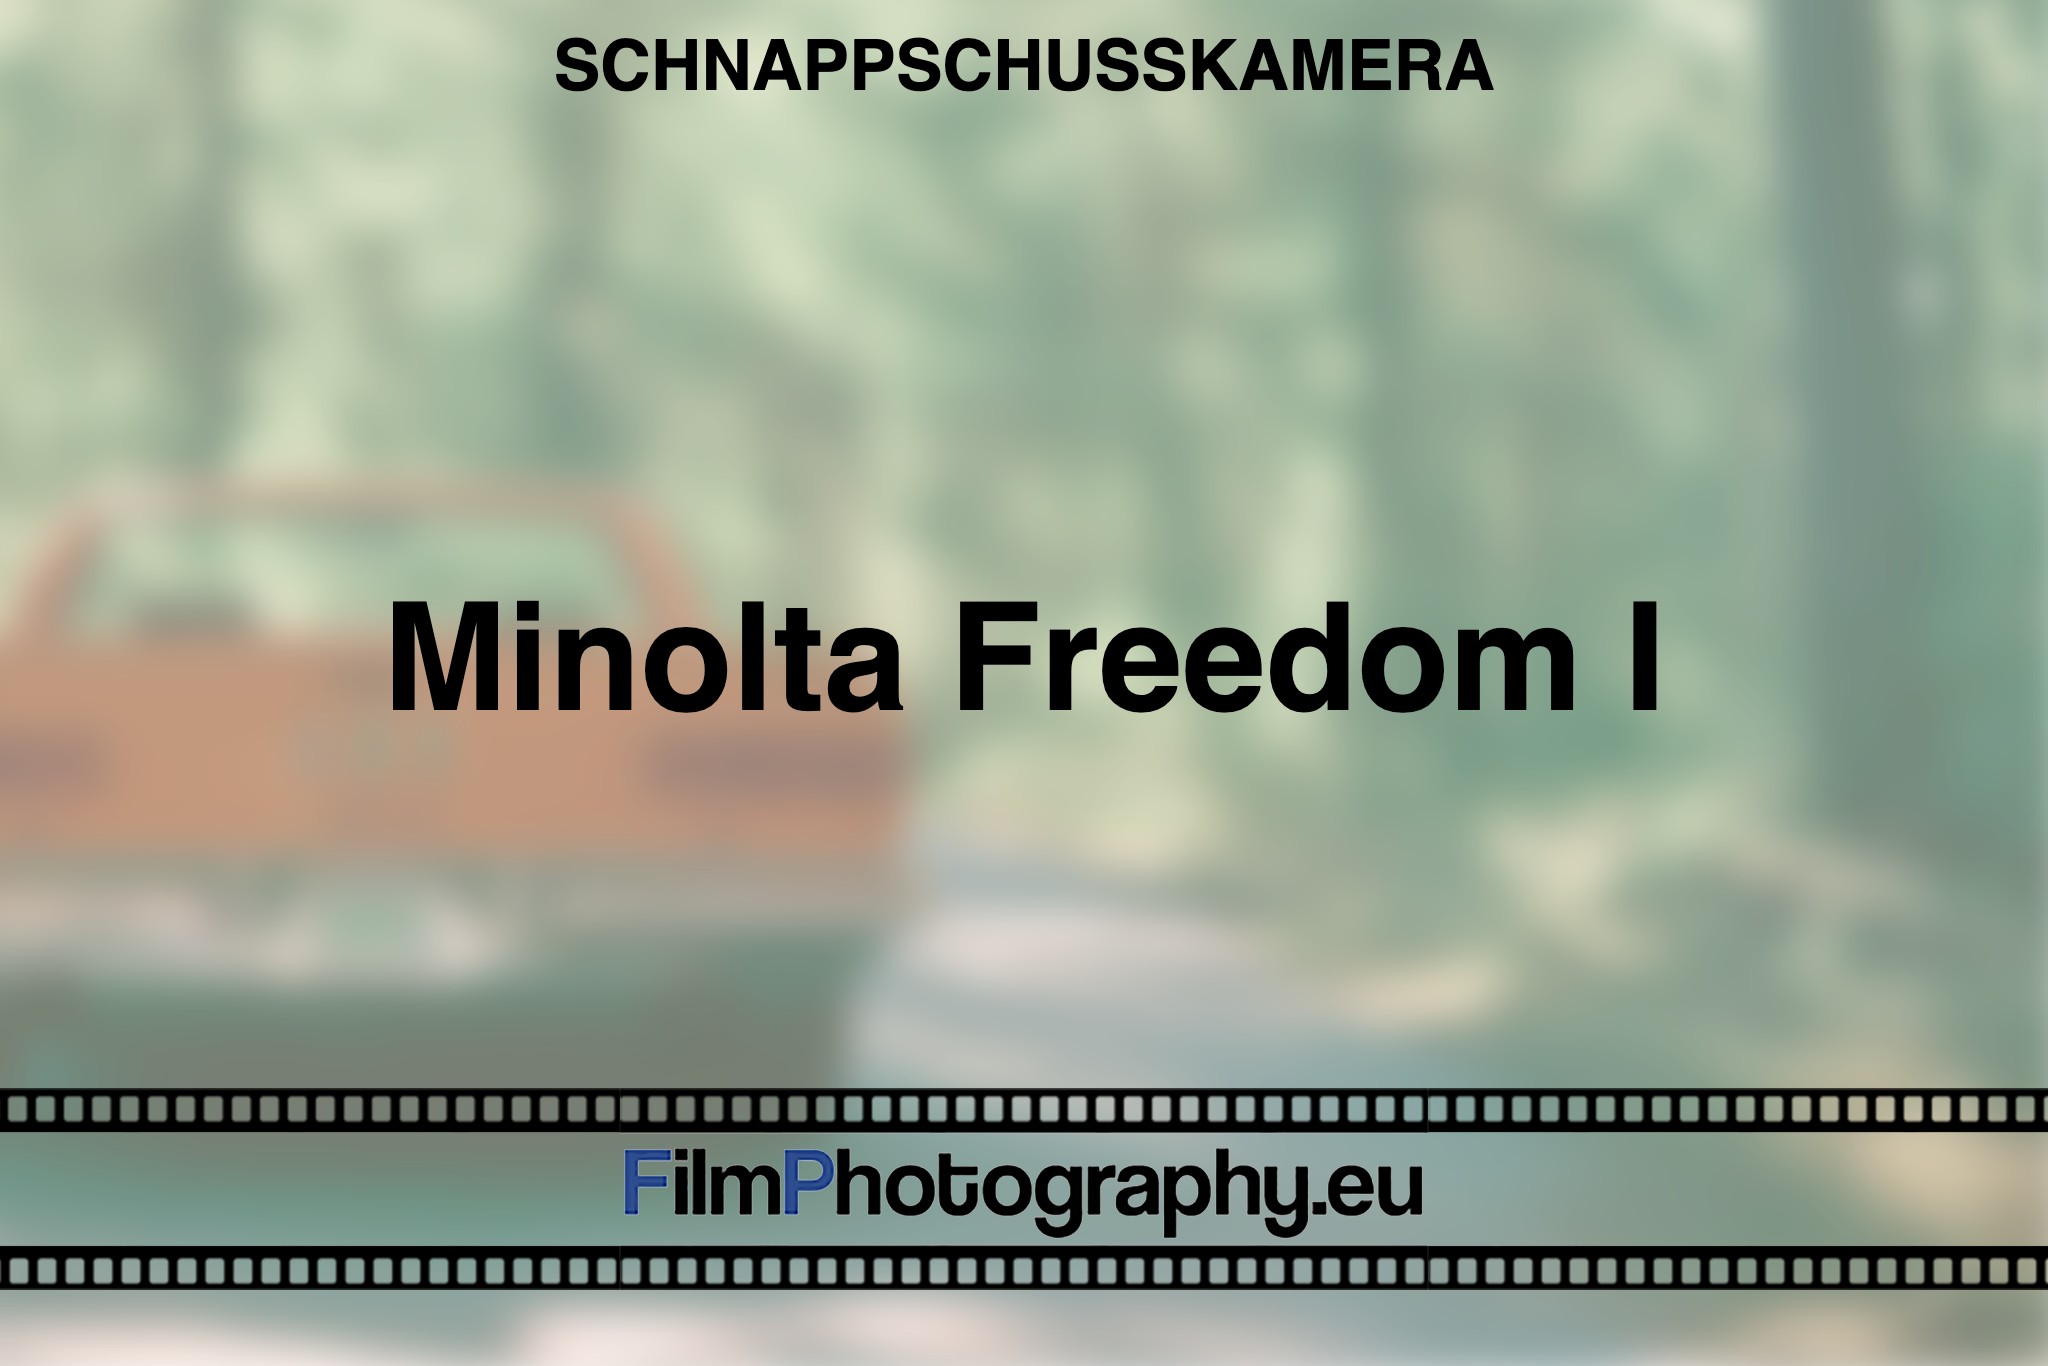 minolta-freedom-i-schnappschusskamera-bnv